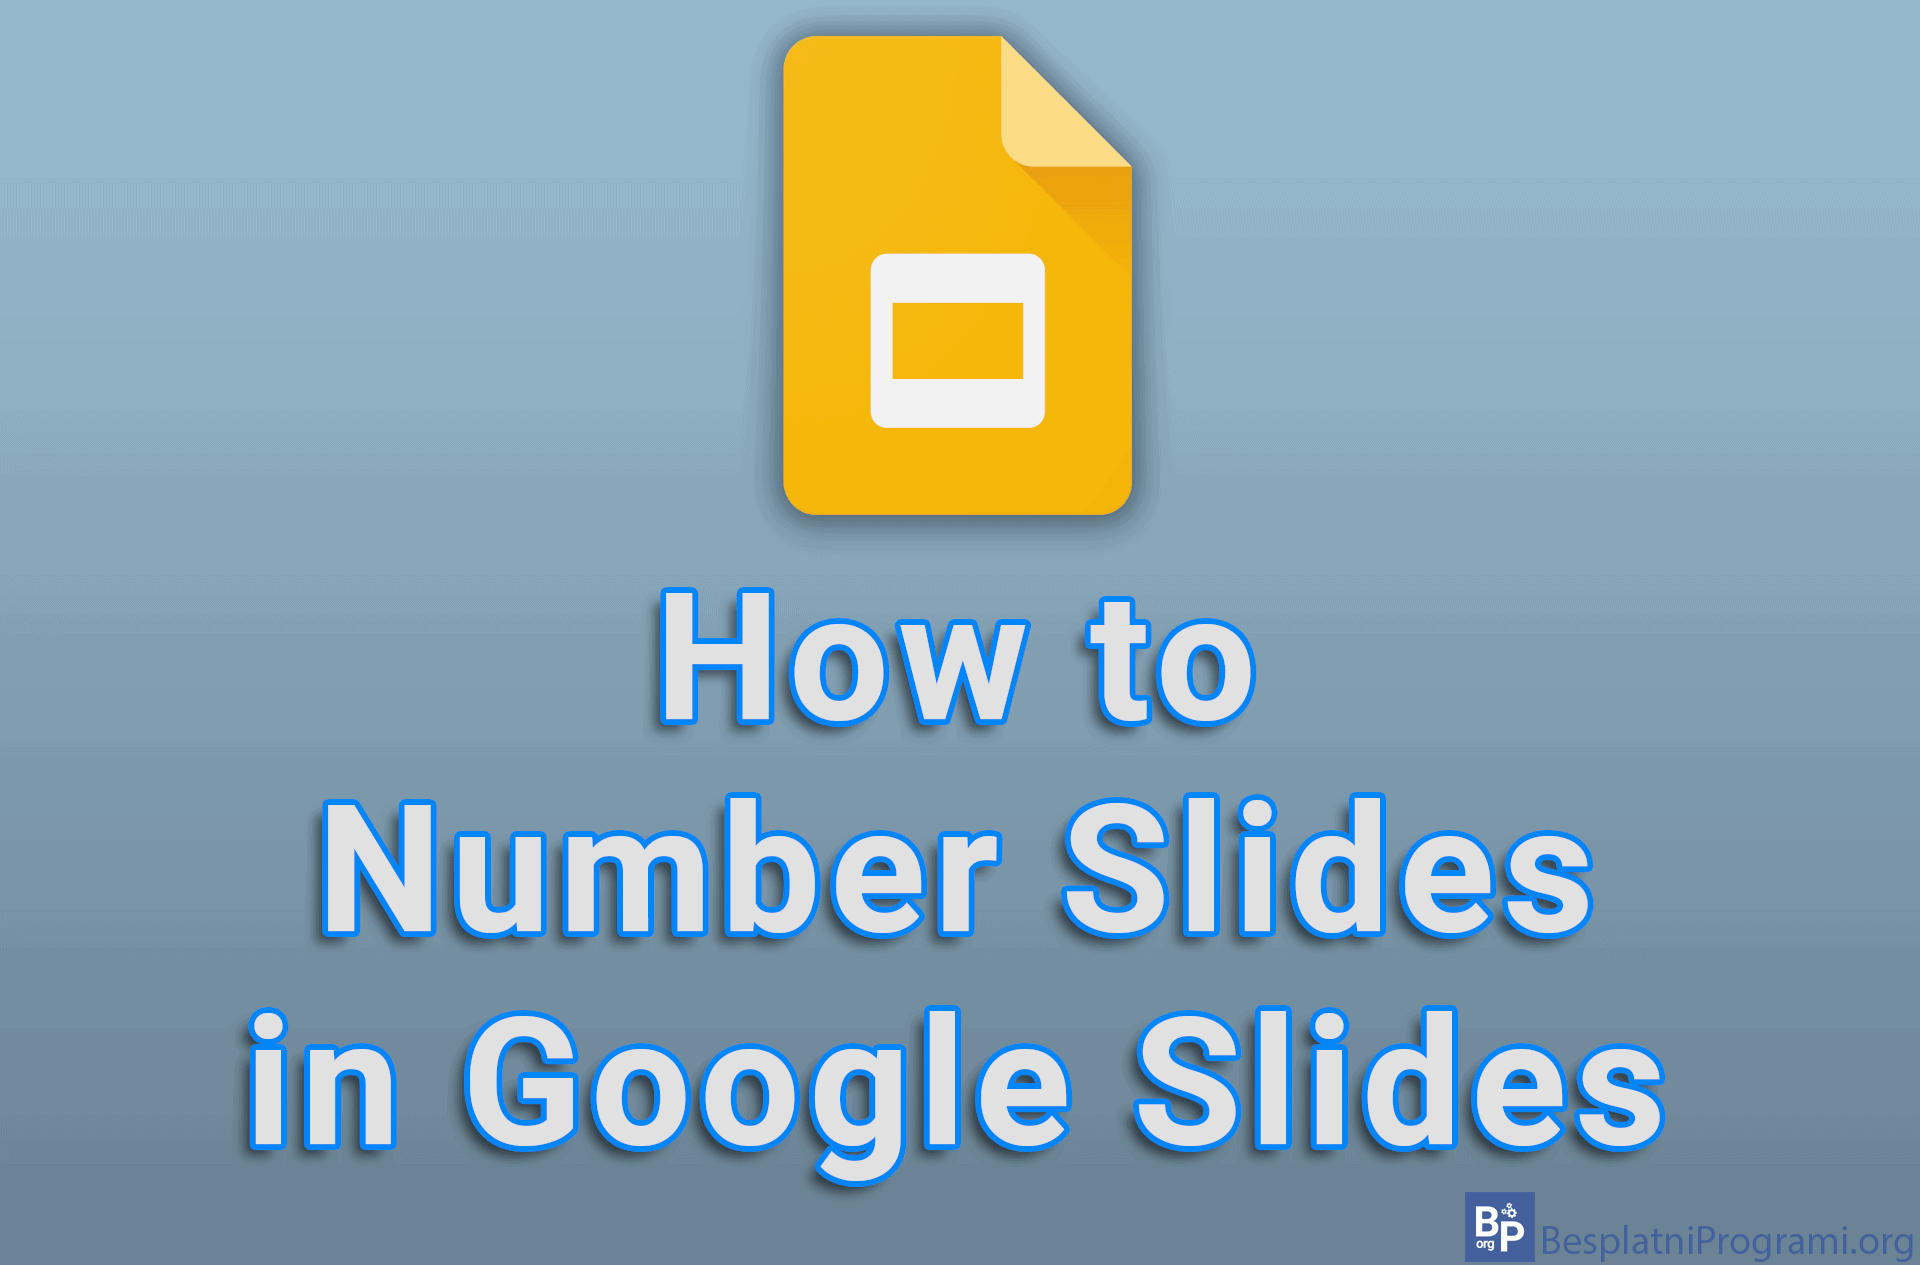 How to Number Slides in Google Slides